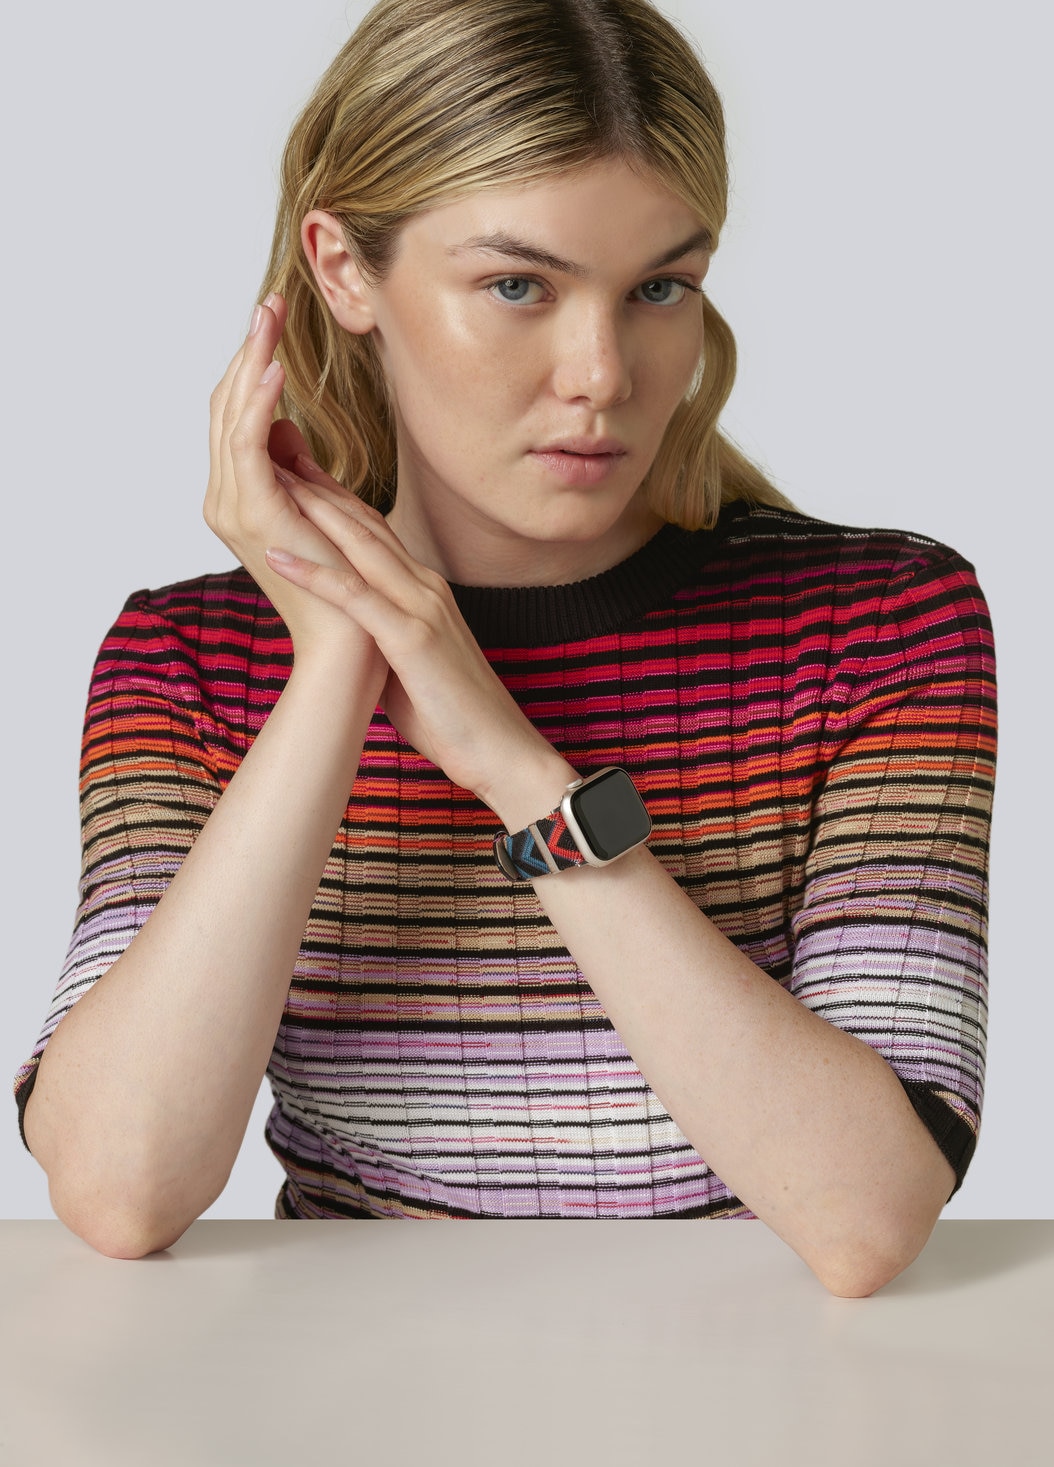 Missoni Fabric 22 mm mit Apple Watch kompatibles Armband, Mehrfarbig  - 8053147046266 - 1